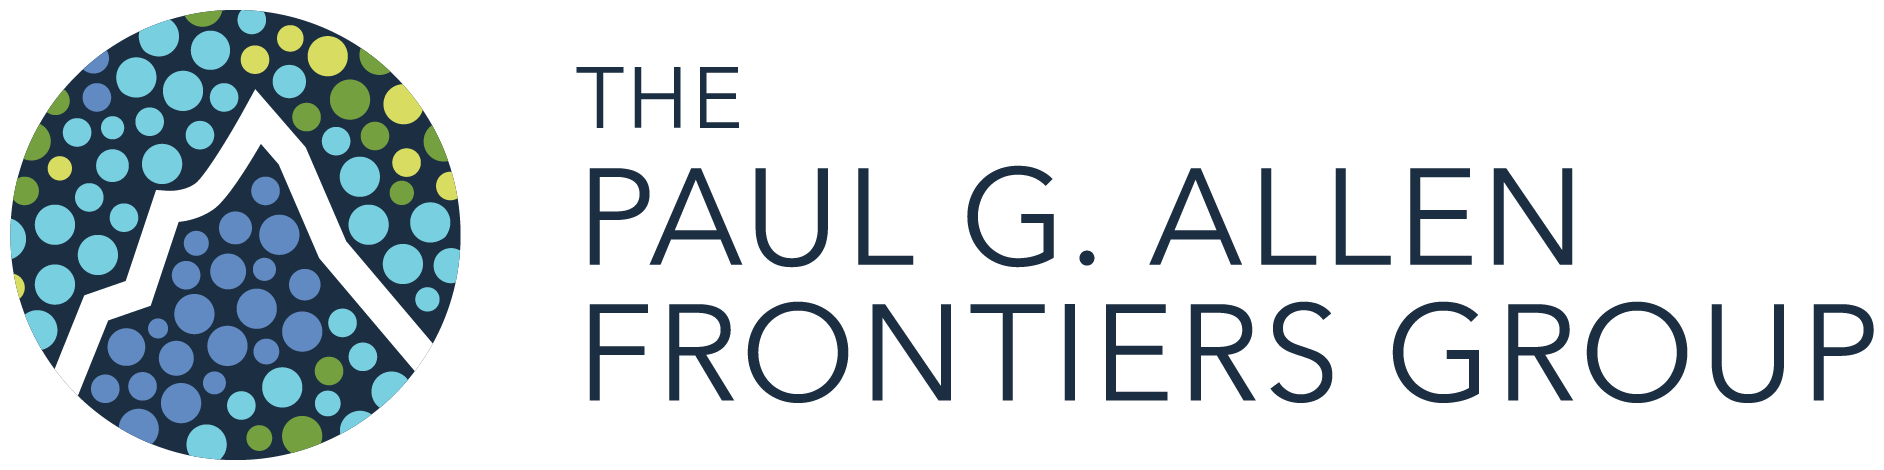 Paul G. Allen Frontiers Group